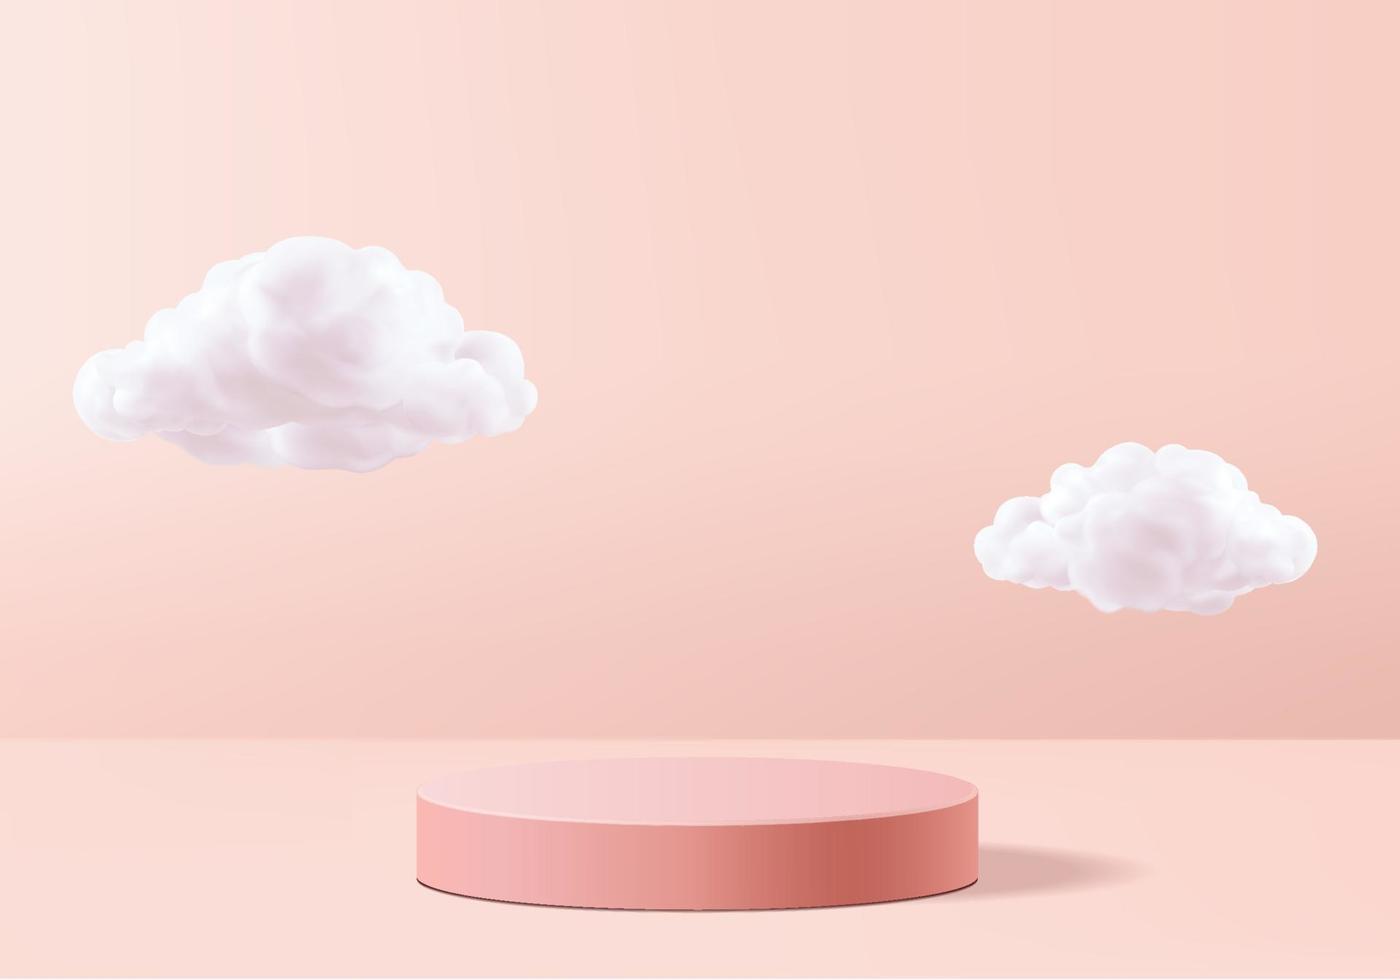 vettore di sfondo San Valentino Rendering 3D rosa con podio e scena bianca nuvola, sfondo minimale nuvola 3d Rendering 3D San Valentino amore podio rosa pastello. fase rosa sulla nuvola rende lo sfondo